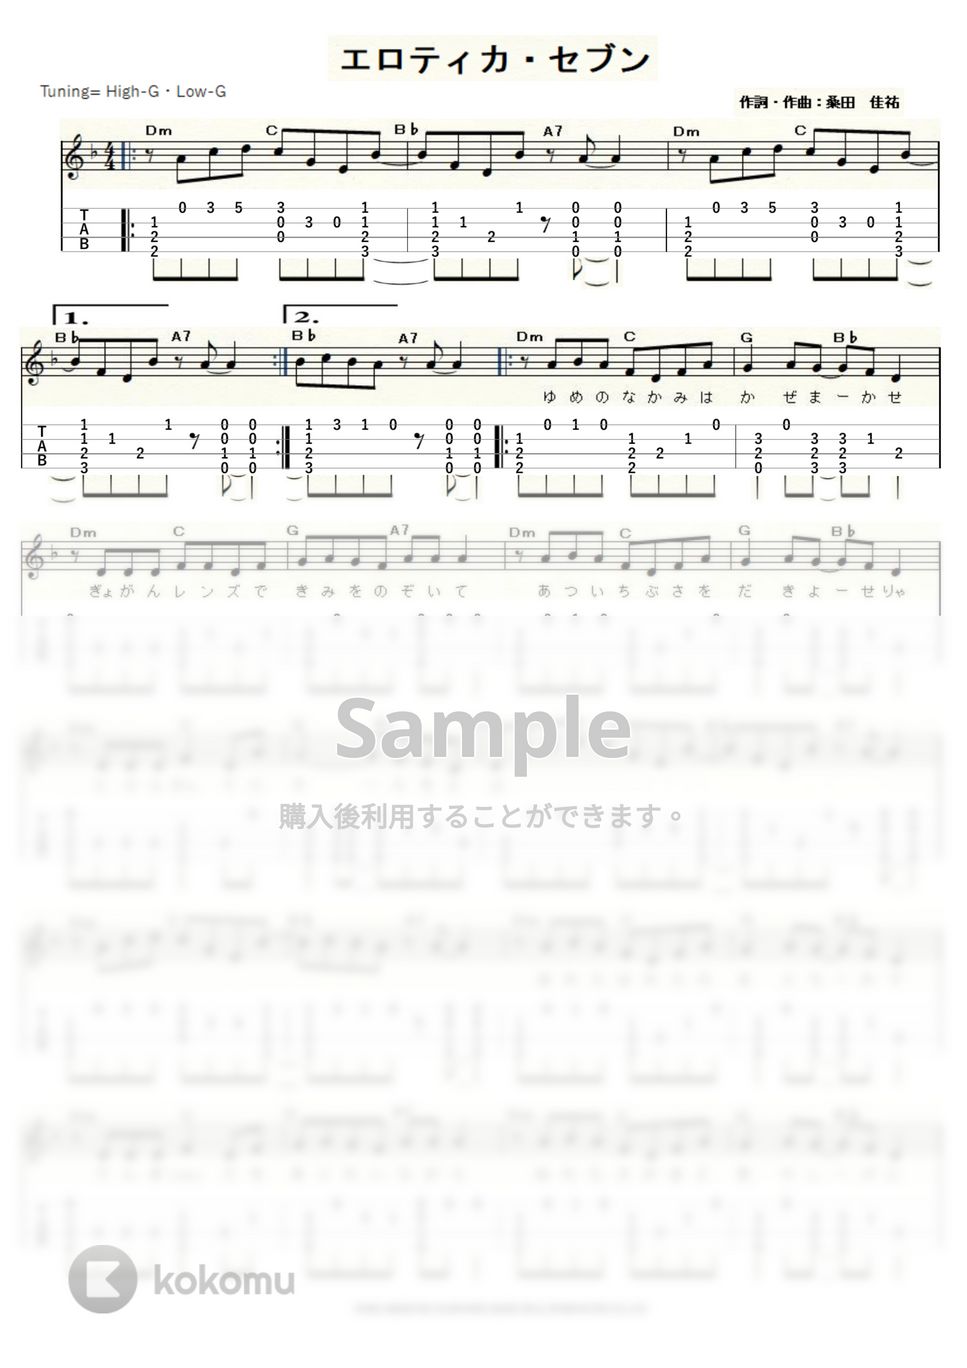 サザンオールスターズ - エロティカ・セブン (ｳｸﾚﾚｿﾛ / High-G・Low-G / 中級) by ukulelepapa